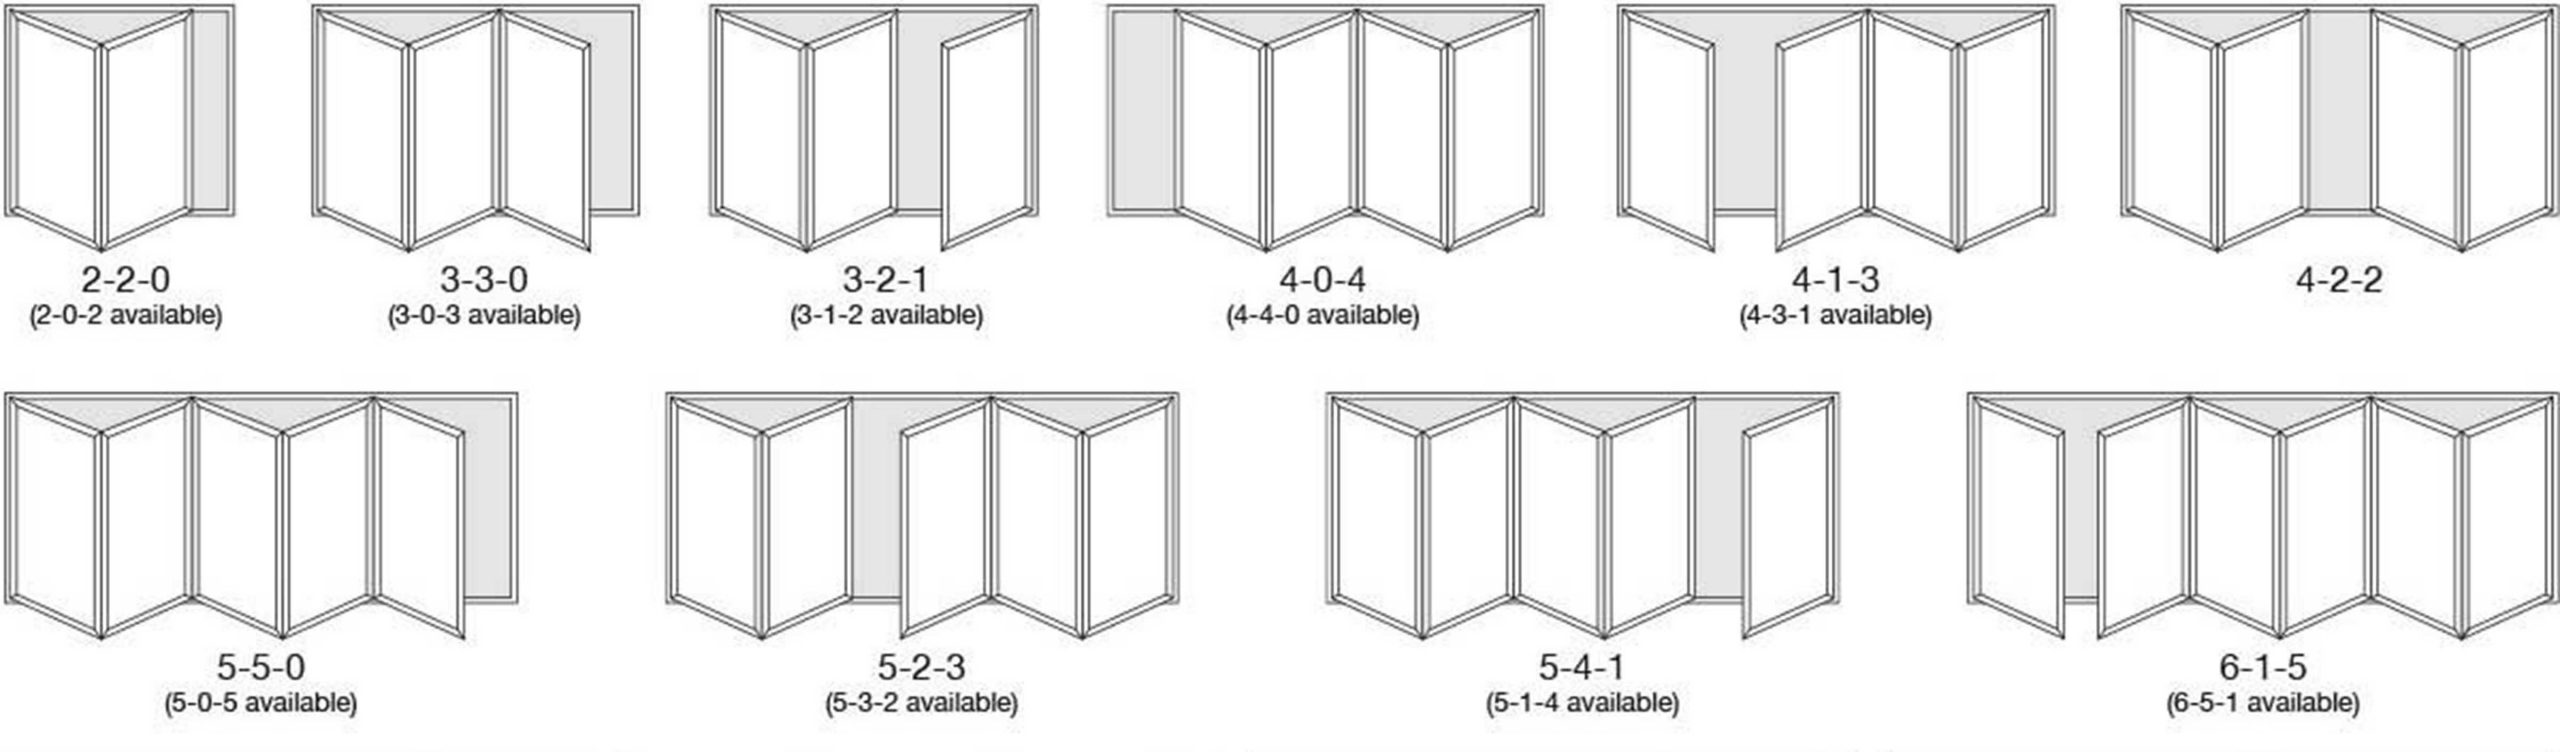 Bifold Doors Configurations